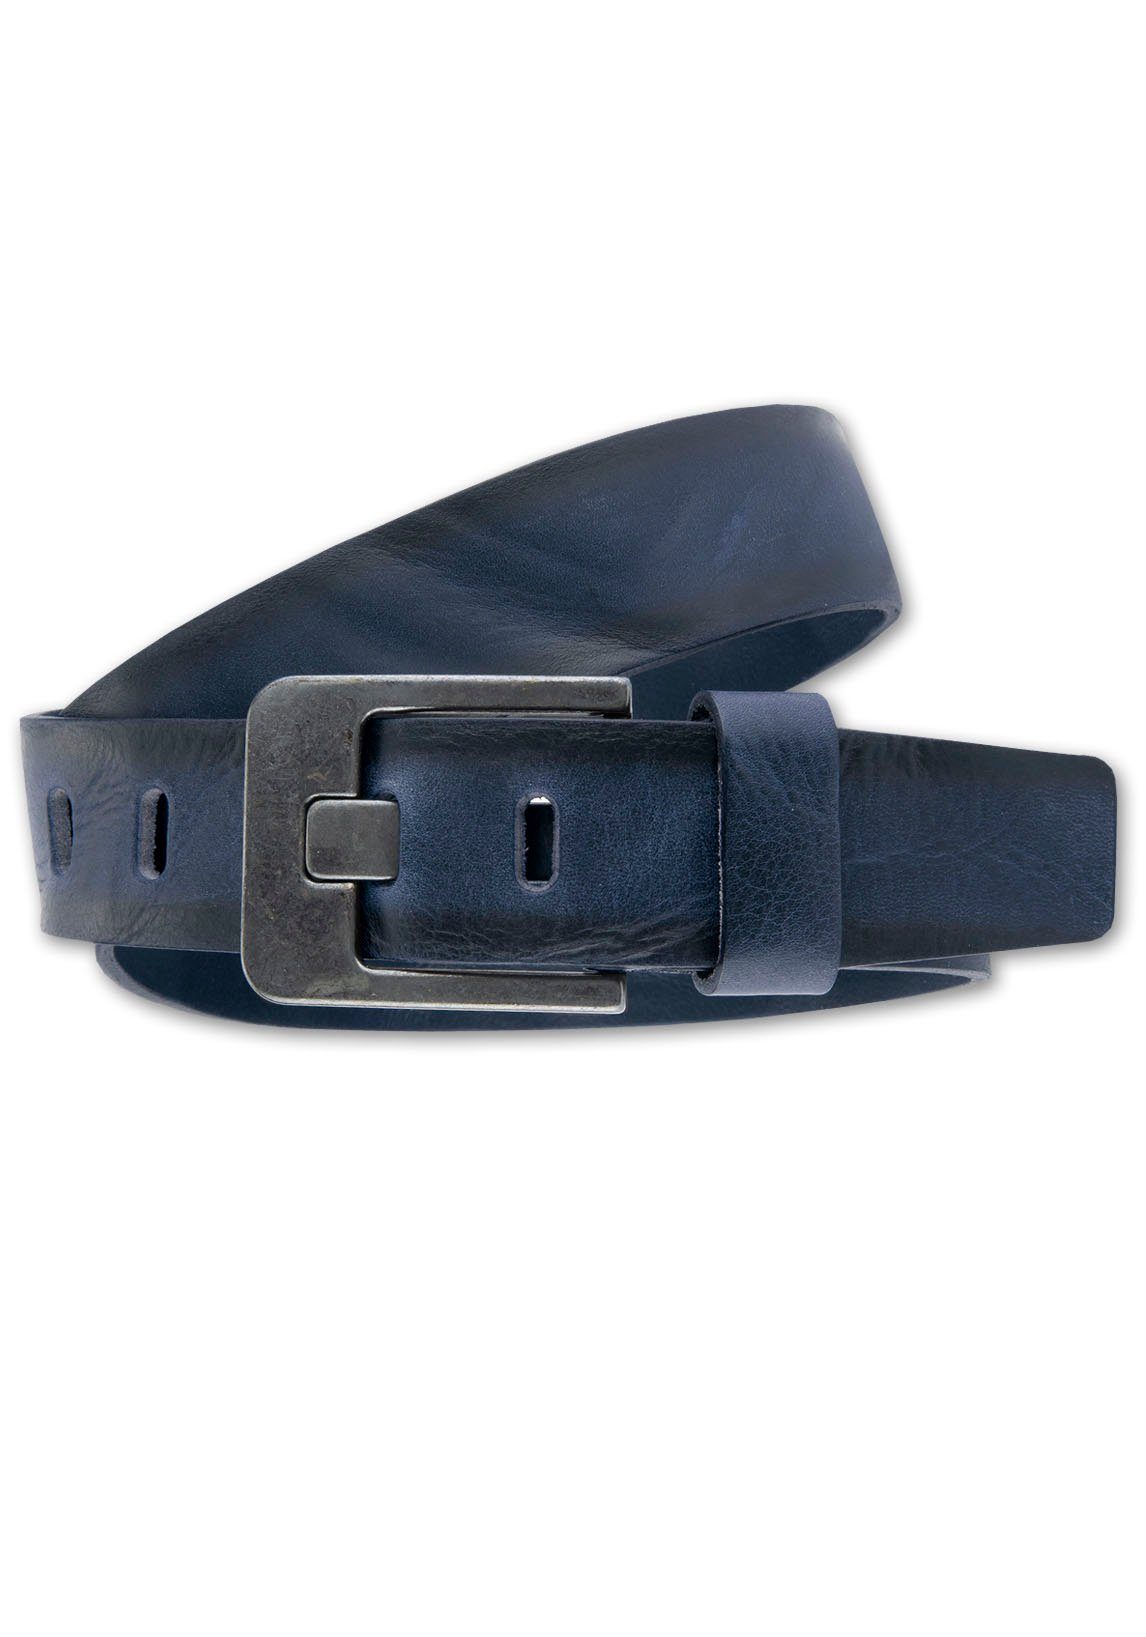 markanter Ledergürtel BERND dunkelblau mit Ledergürtel GÖTZ dunkler Designschließe